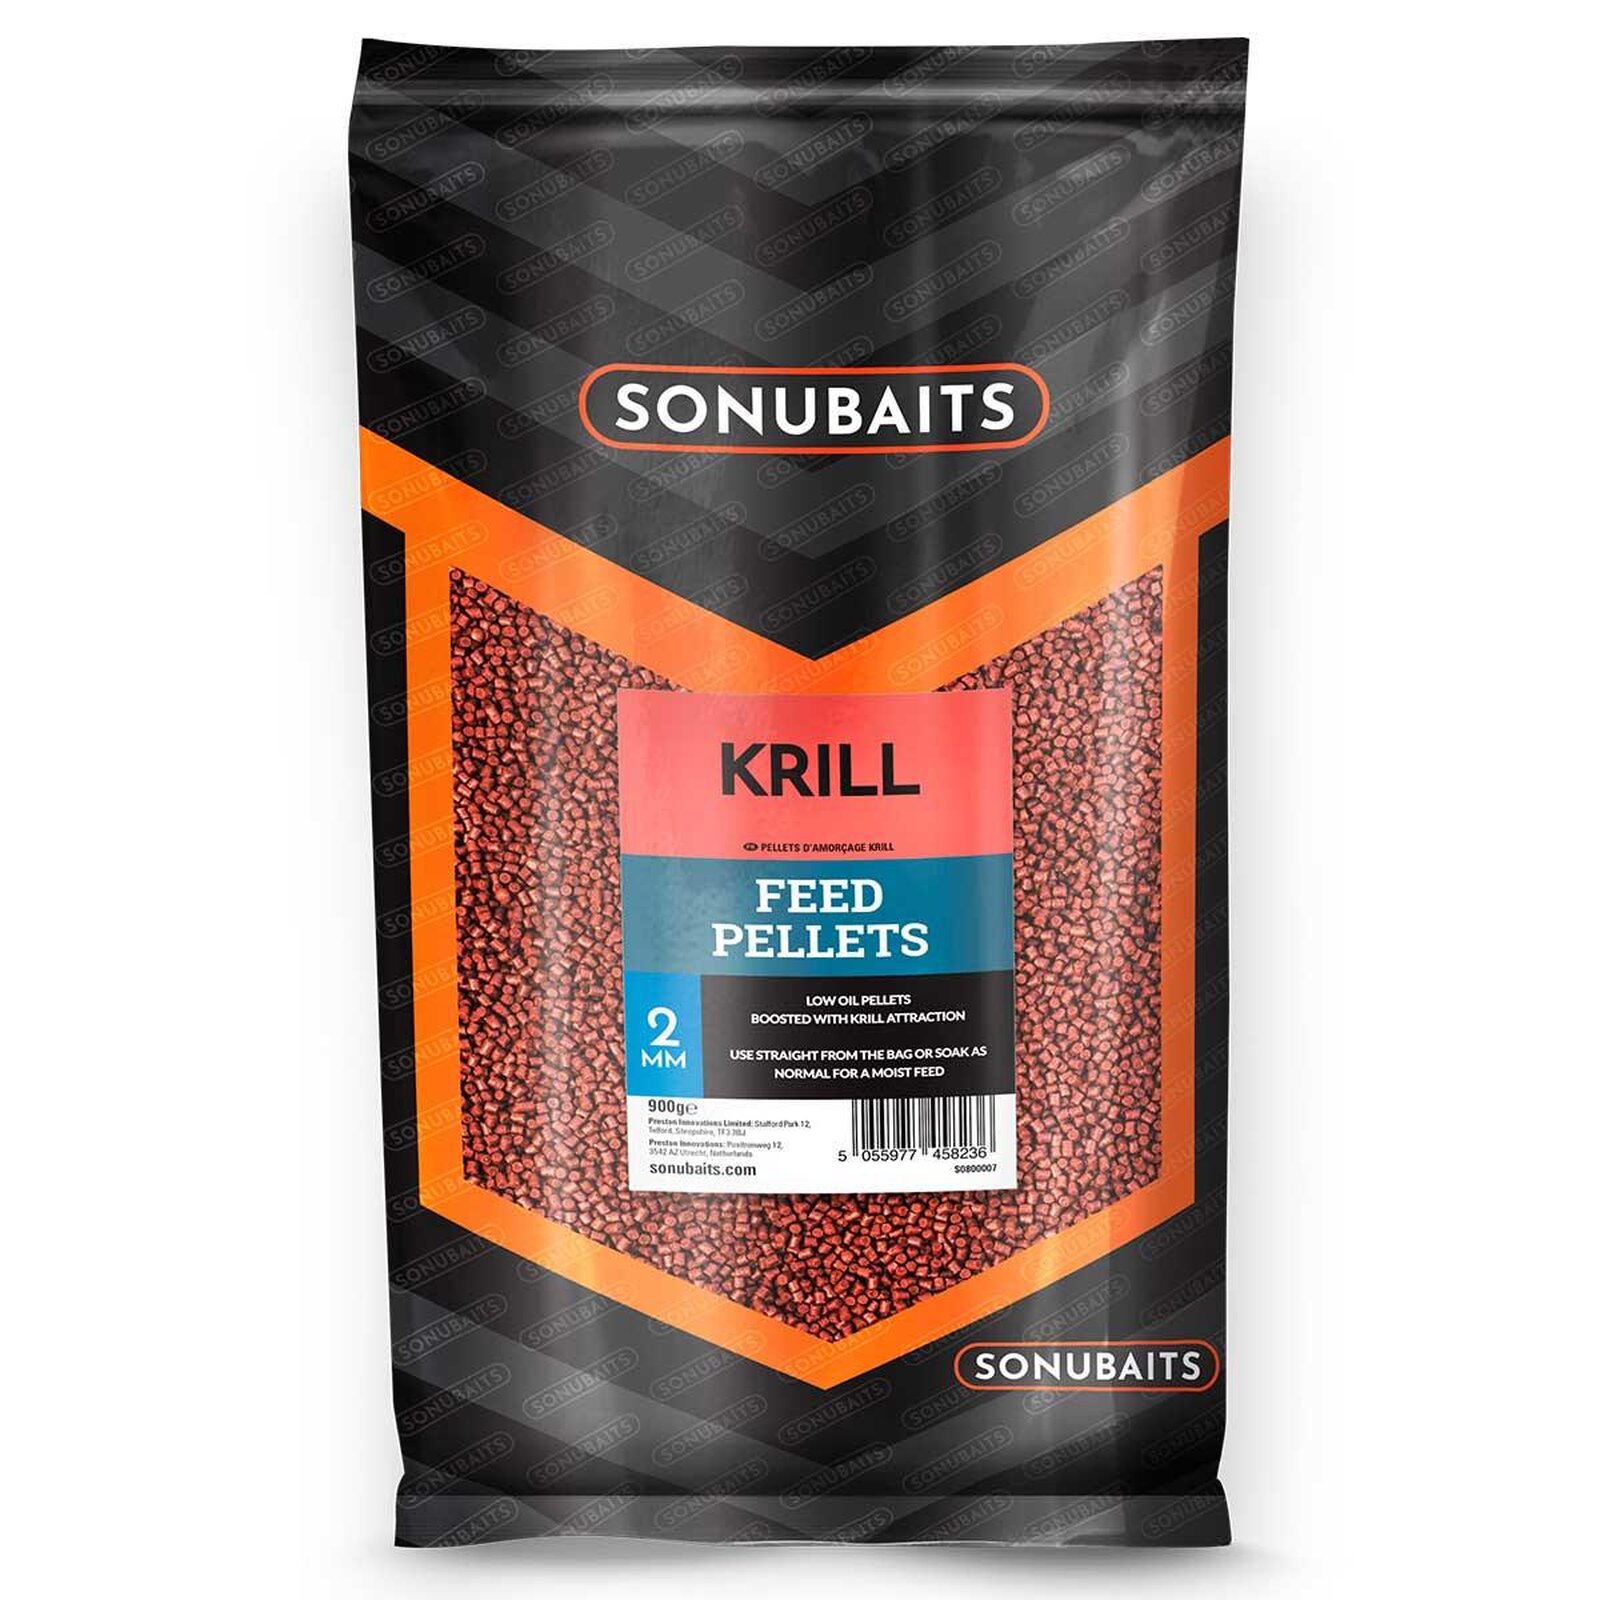 Sonubaits Krill Feed Pellets 4mm 900g